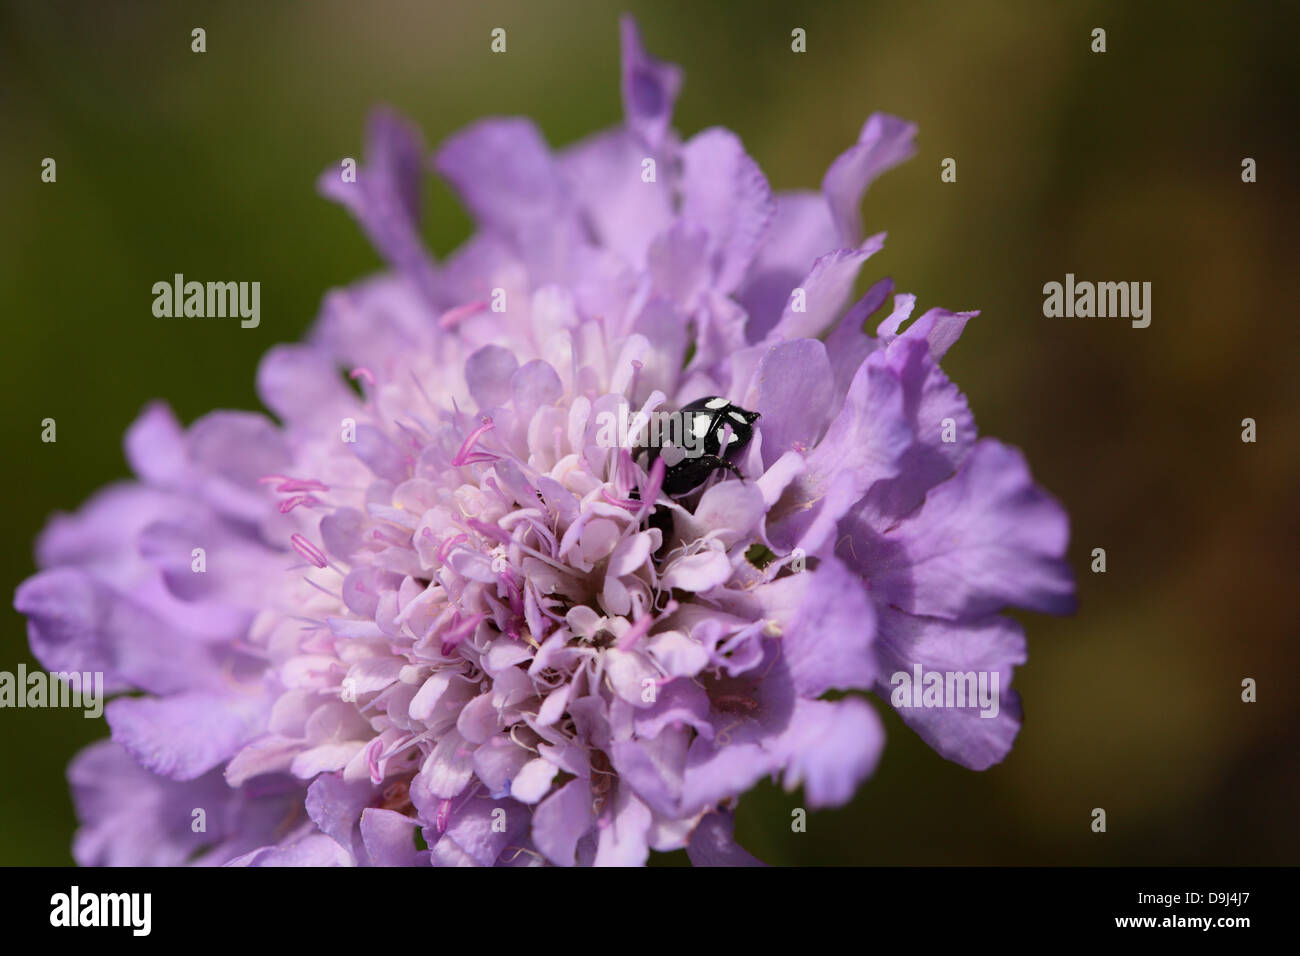 Insectes noir et blanc s'enfouissant dans une lumière violette Banque D'Images